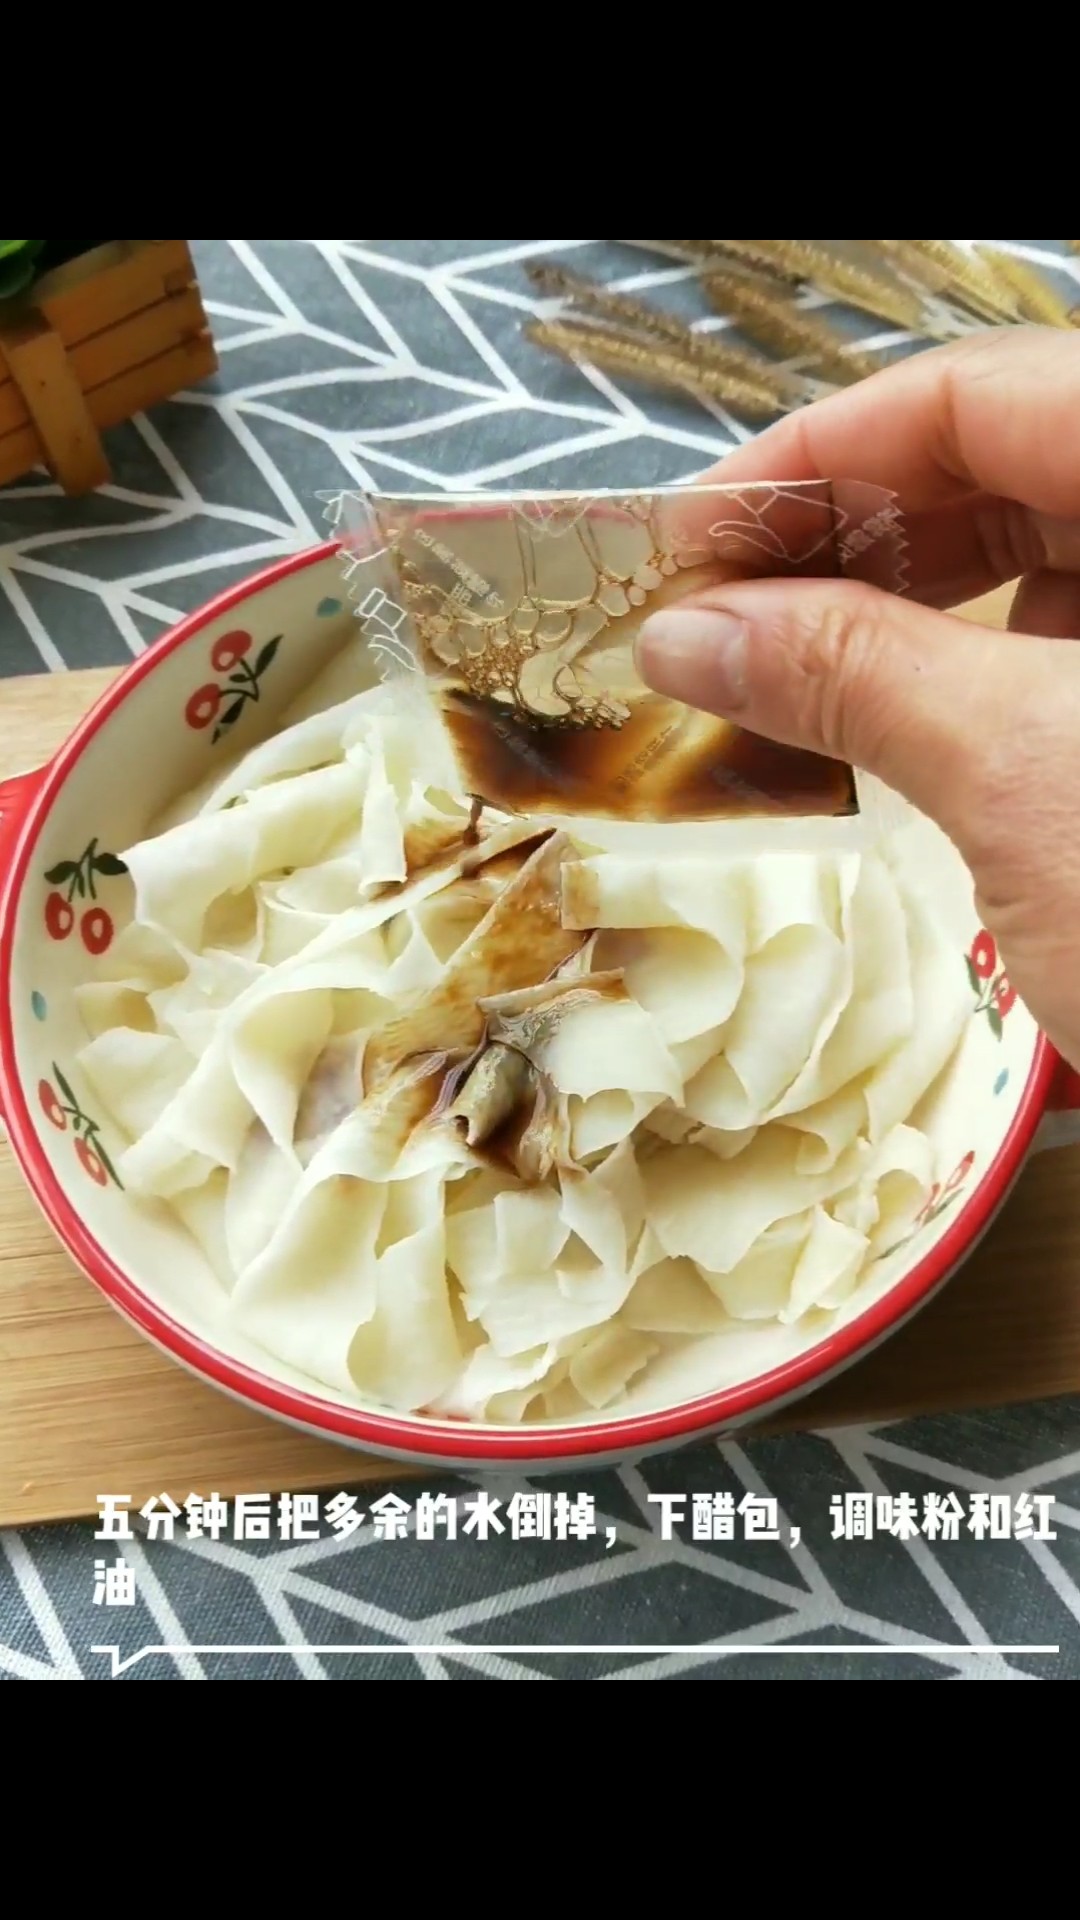 Red Oil Pasta recipe